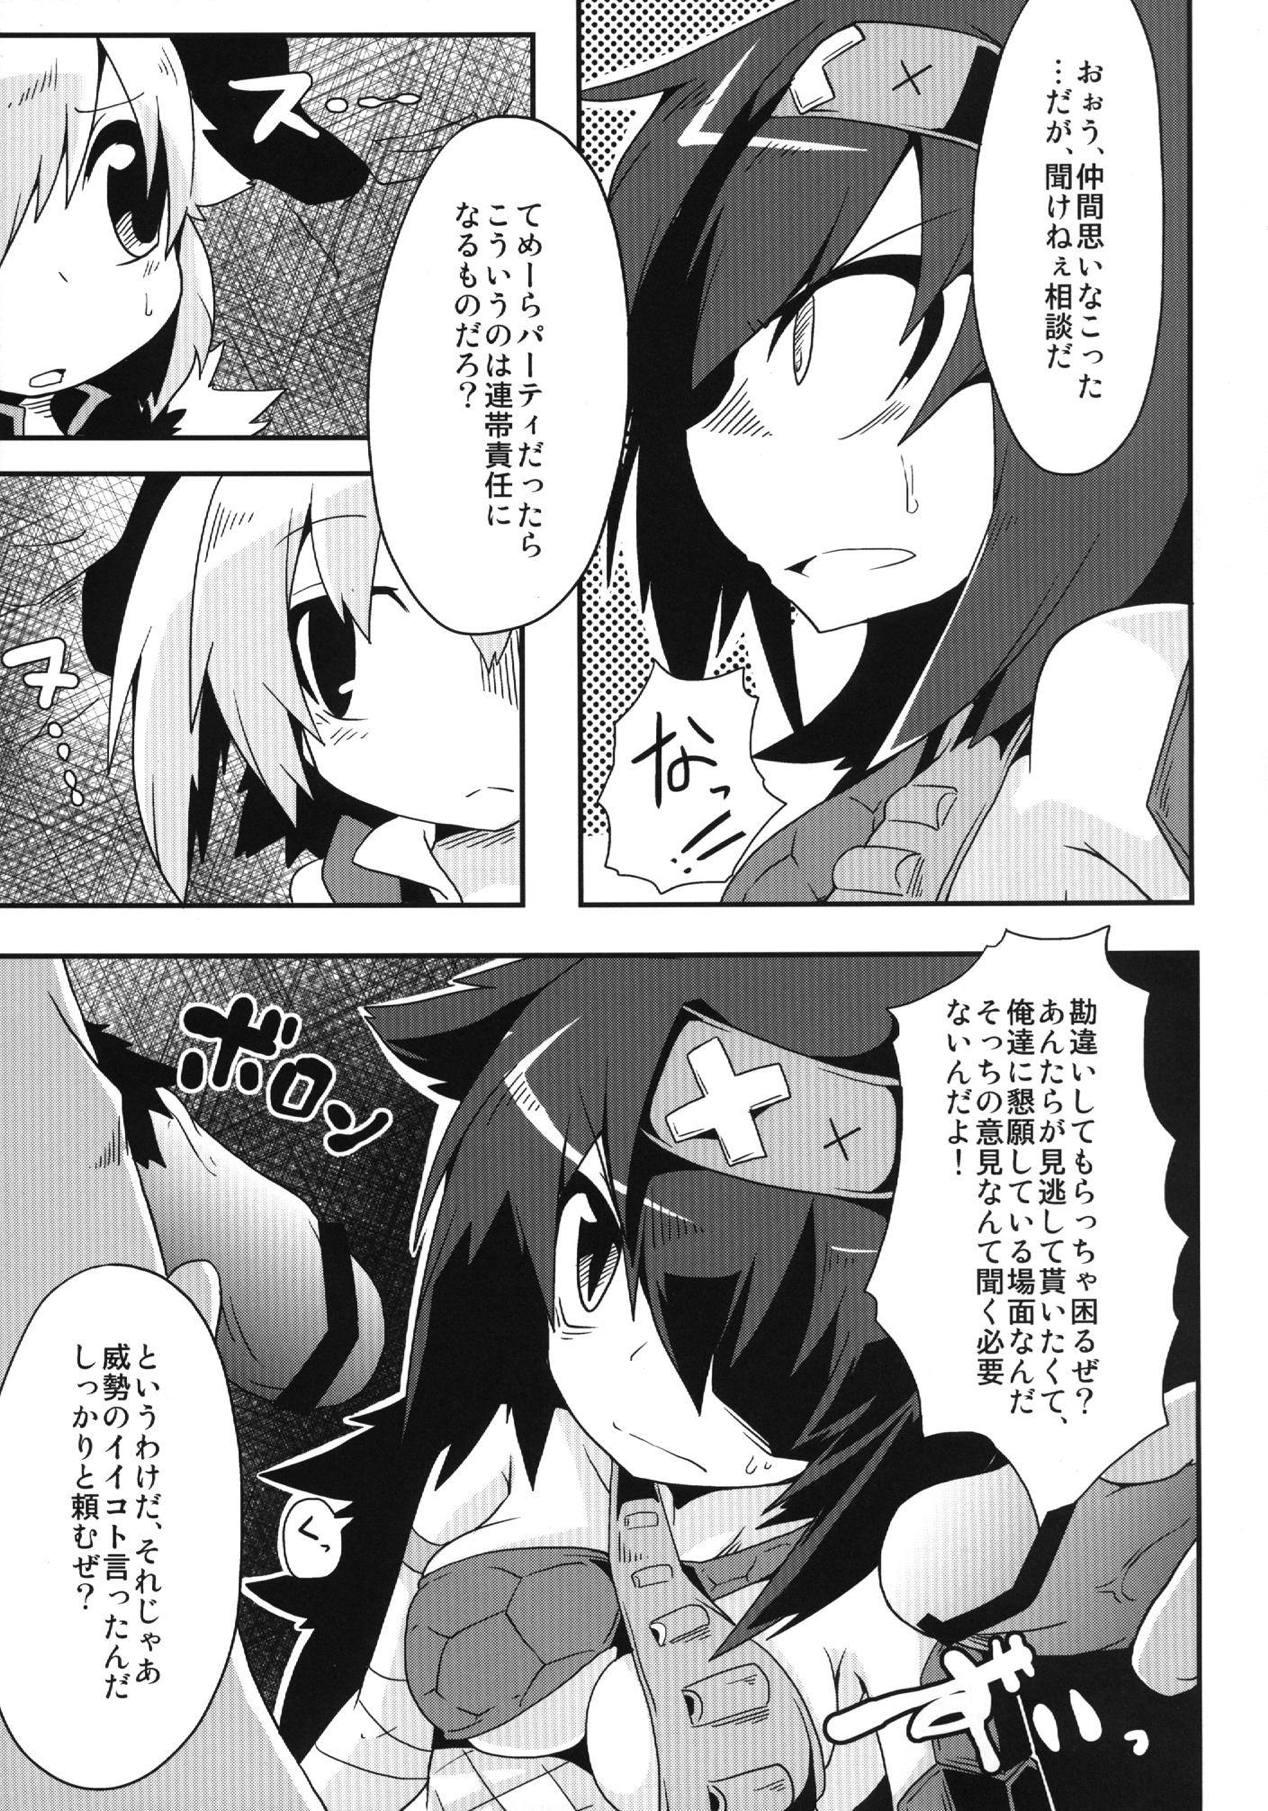 Girlfriends Kirin no Moshi mo no Sonogo no Hanashi - Monster hunter Forbidden - Page 6